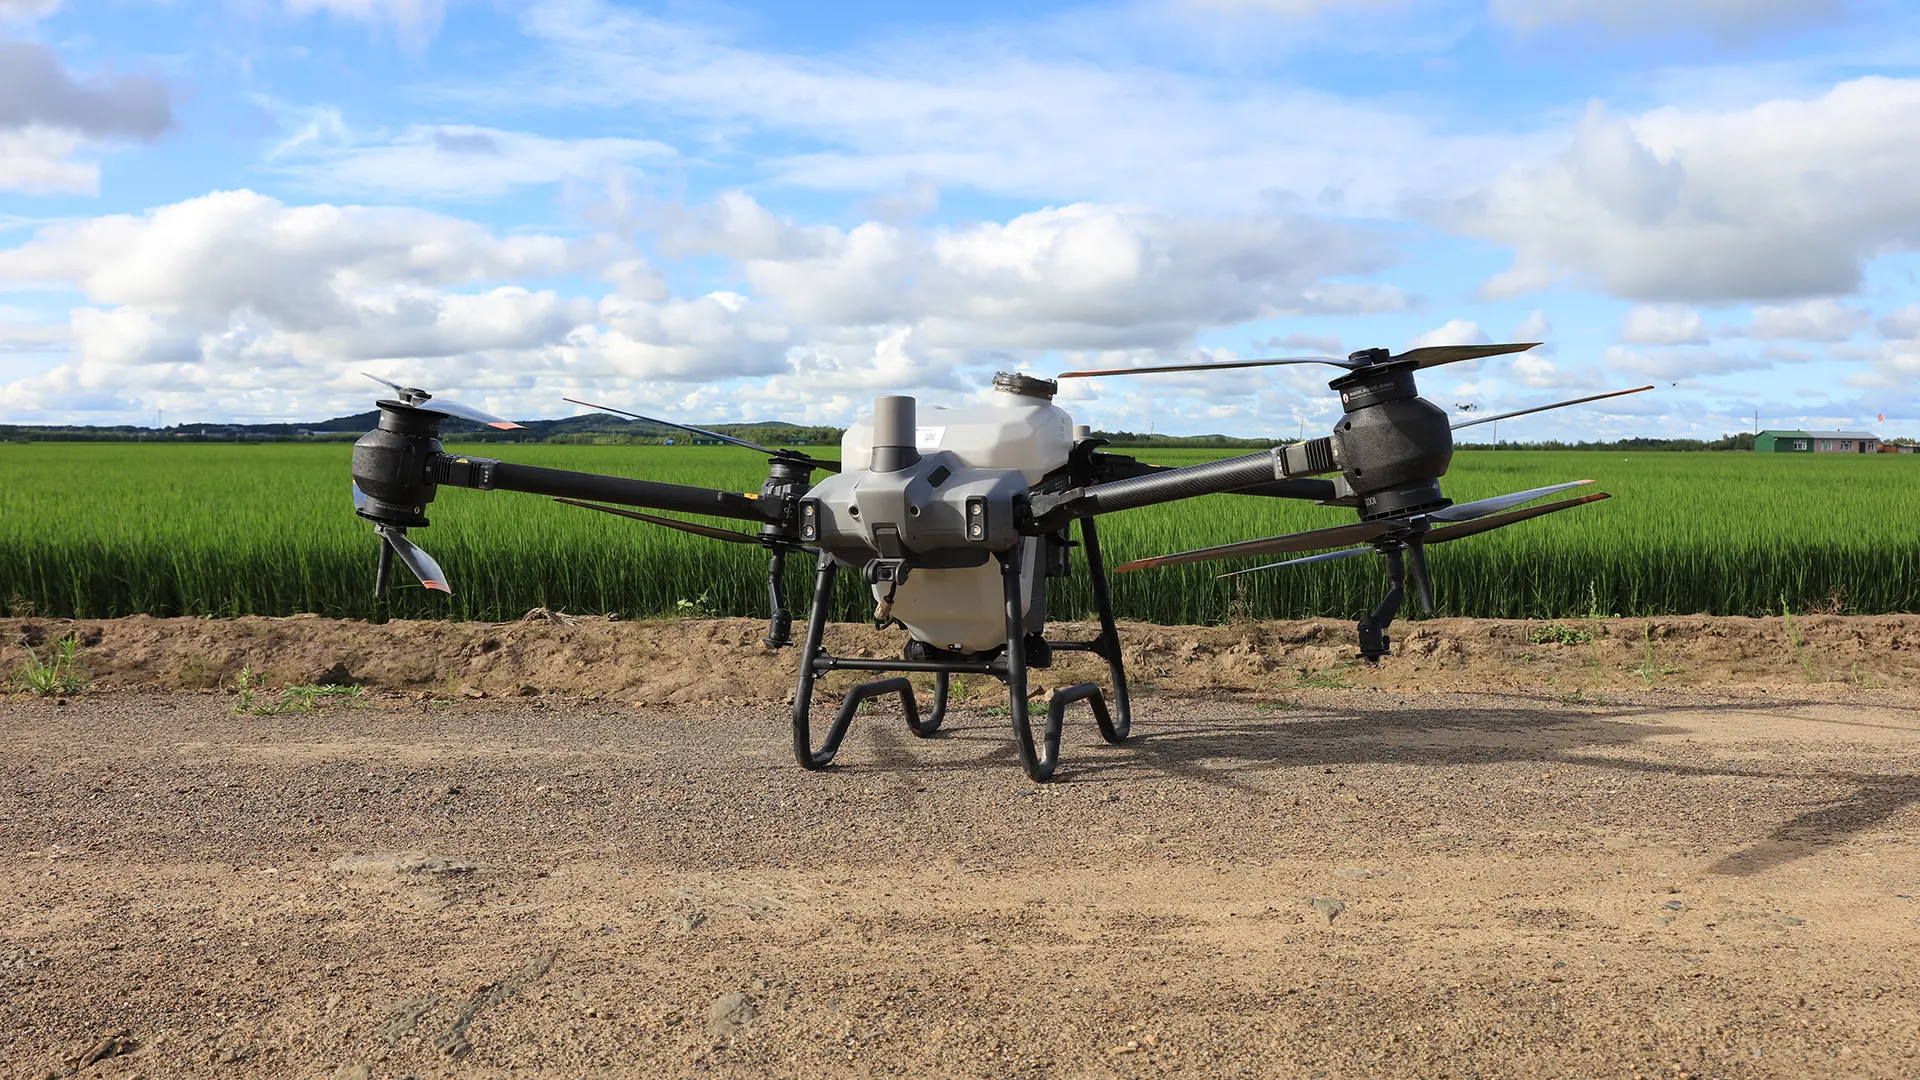 Università di Padova: nuovo progetto con droni in agricoltura